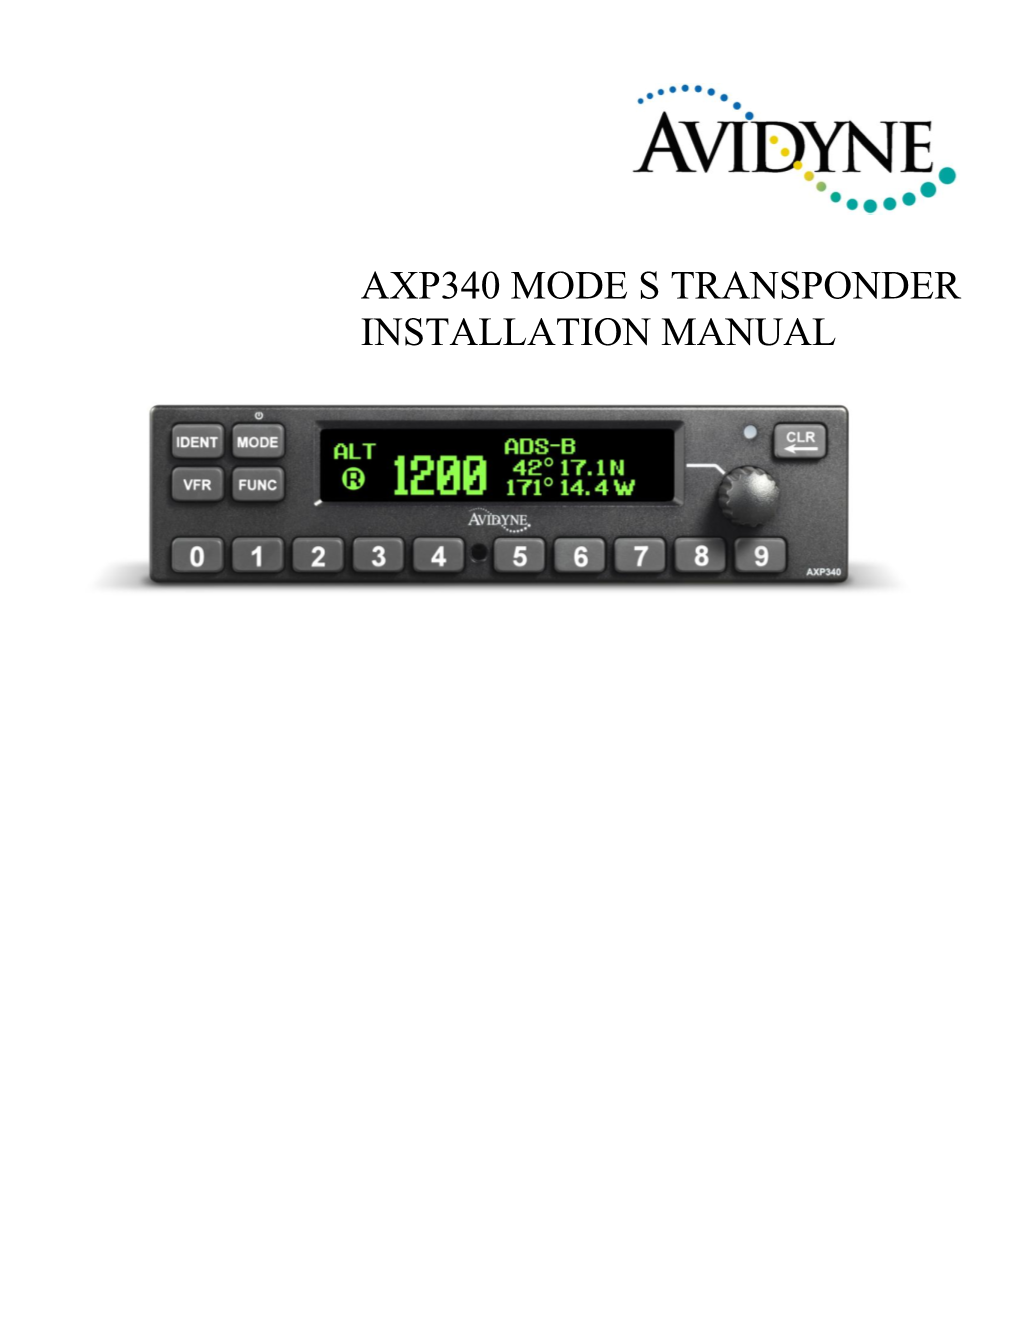 AXP340 Transponder Installation Manual